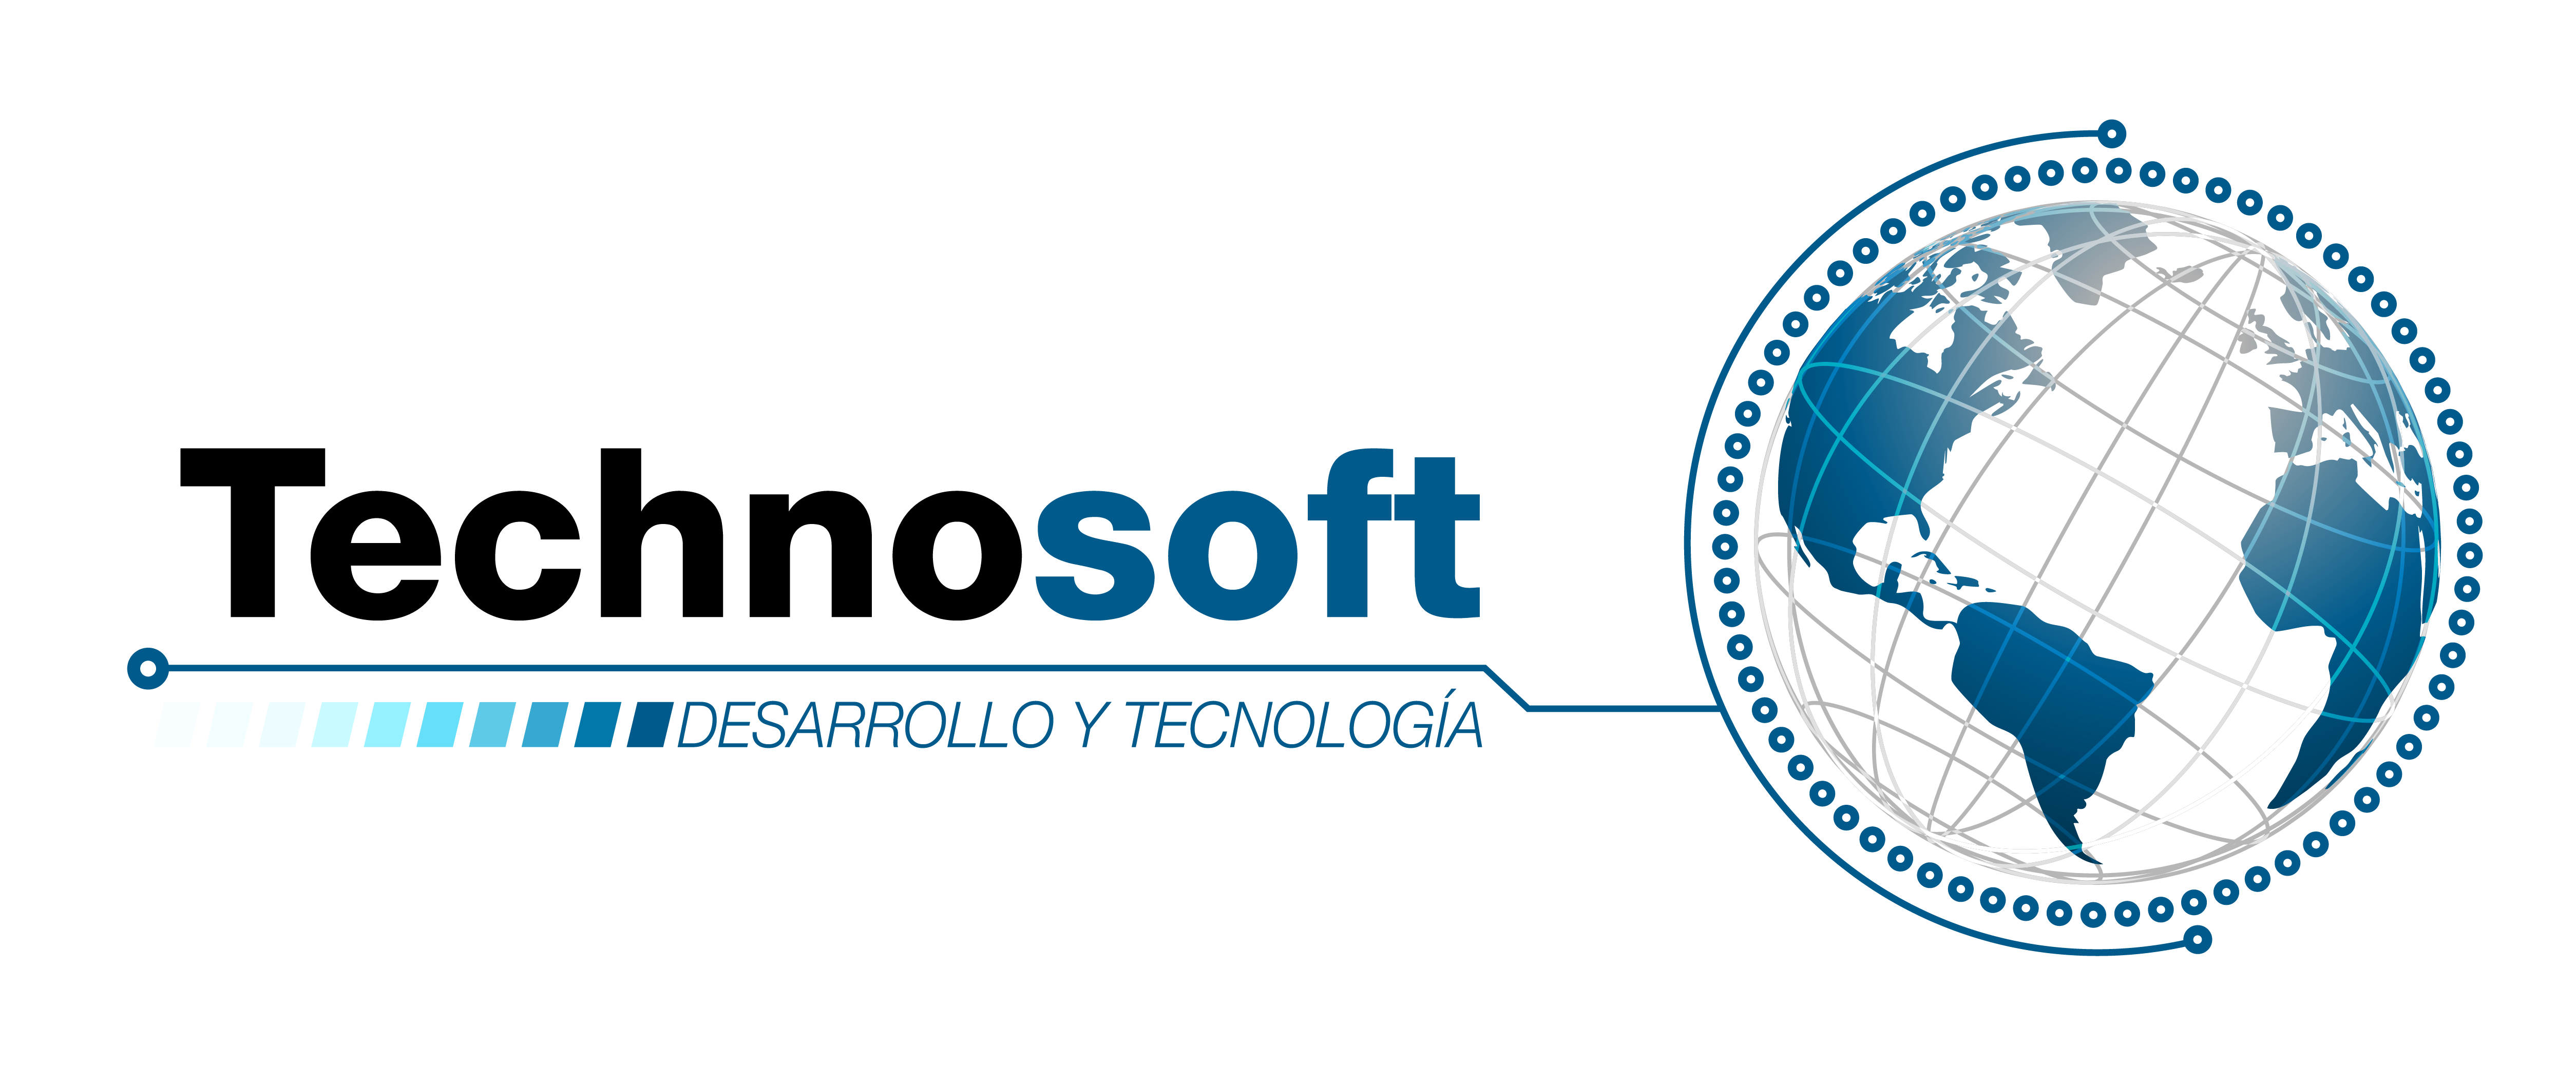 Technosoft Informatica